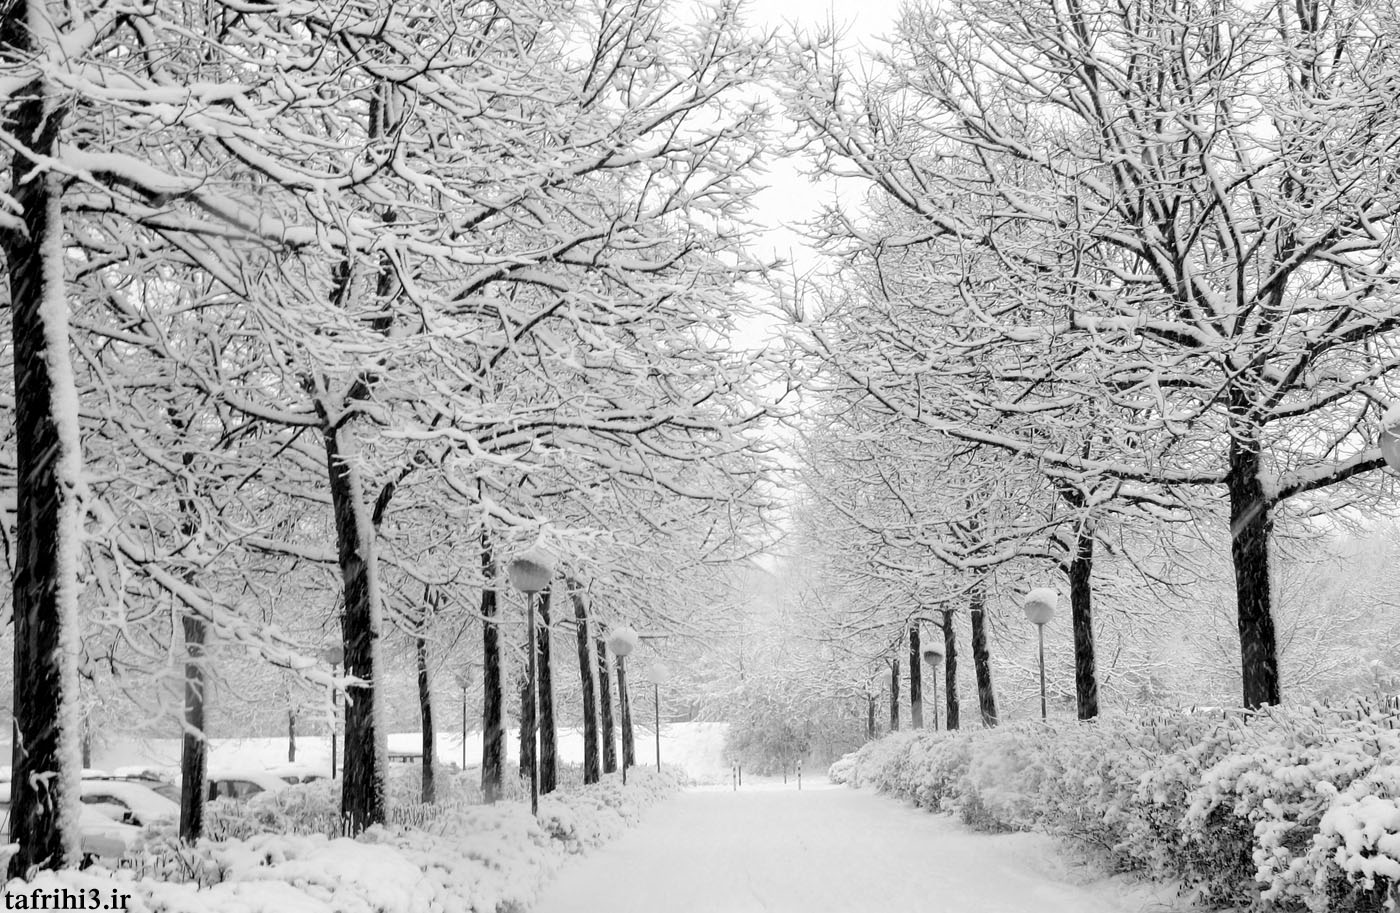 عکس های متحرک از فصل زمستان